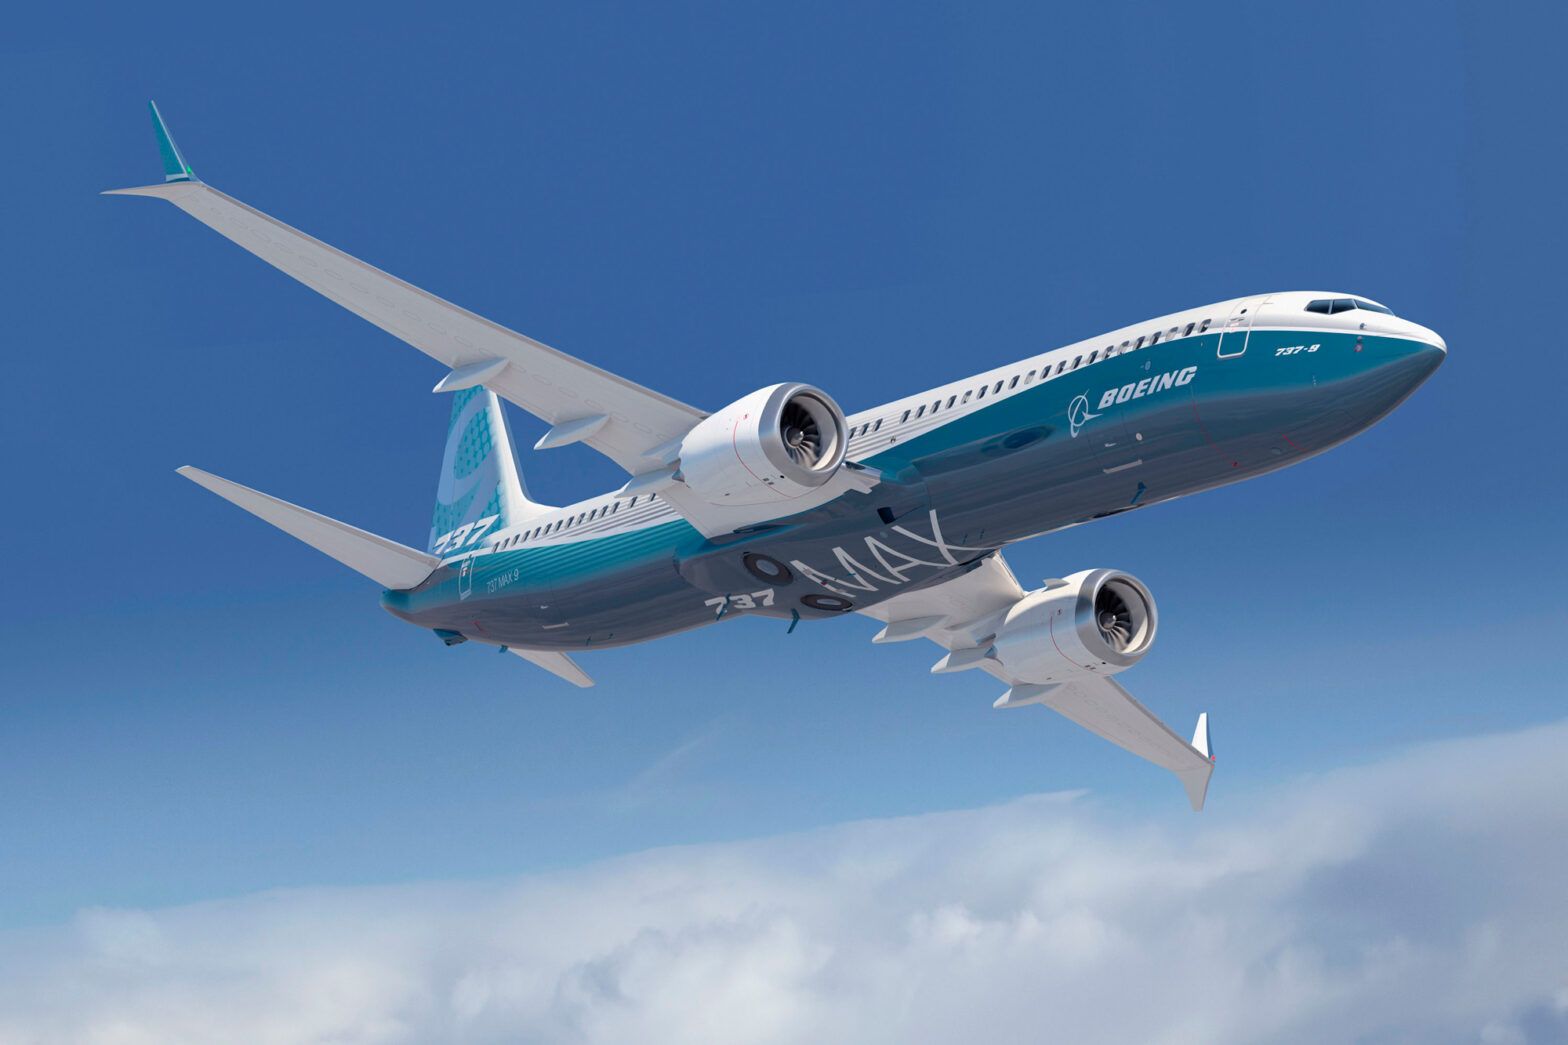 ચેતવણીની ઘંટડી વાગી રહી છે: શું અનગ્રાઉન્ડેડ 737 MAX ખરેખર સલામત છે?